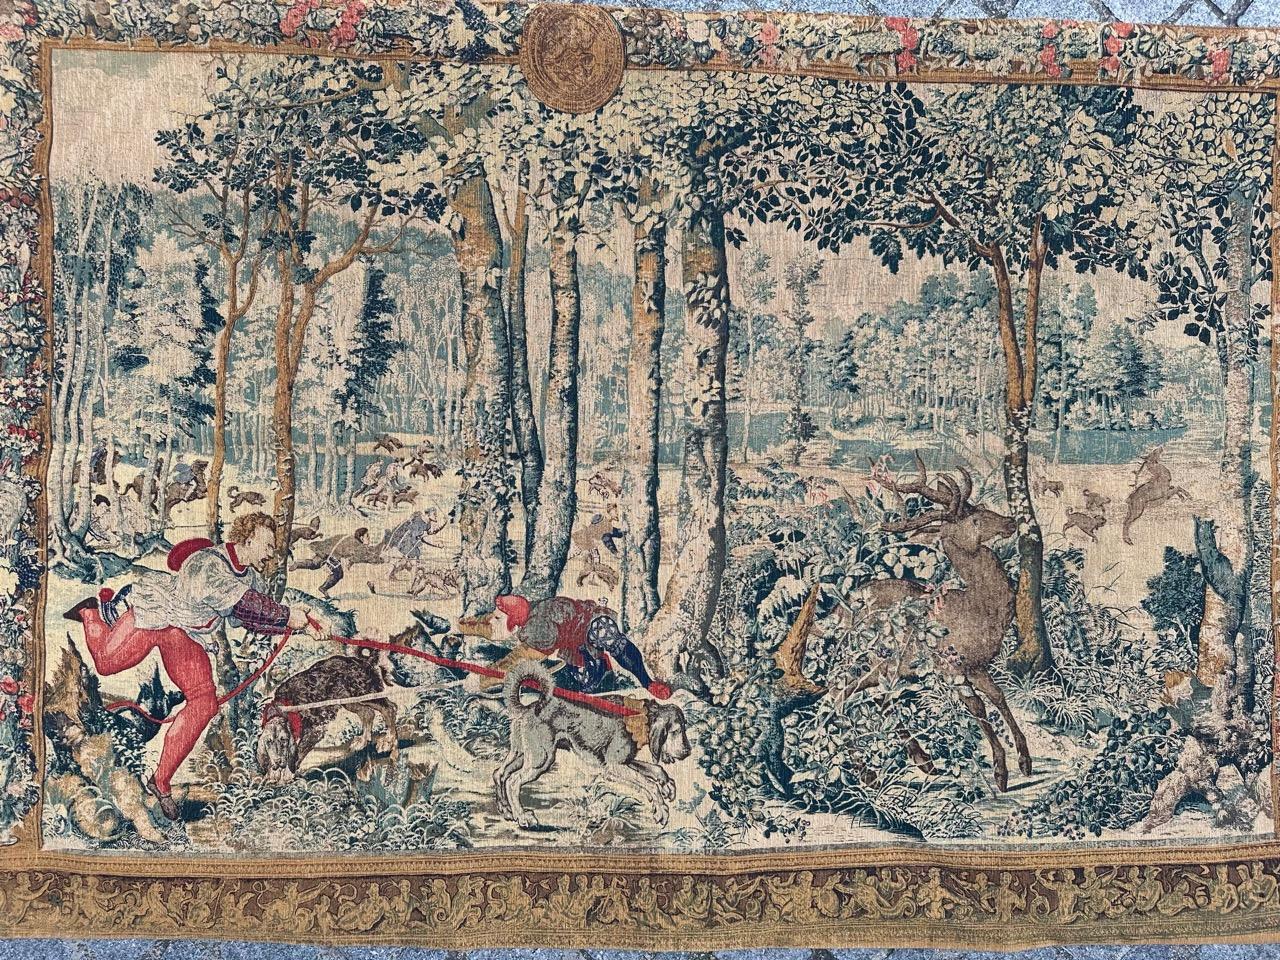 Magnifique tapisserie vintage du 17ème siècle, de style Aubusson, imprimée à la main. Avec un très beau design de chasse, un design médiéval, sur une base en coton.

✨✨✨
